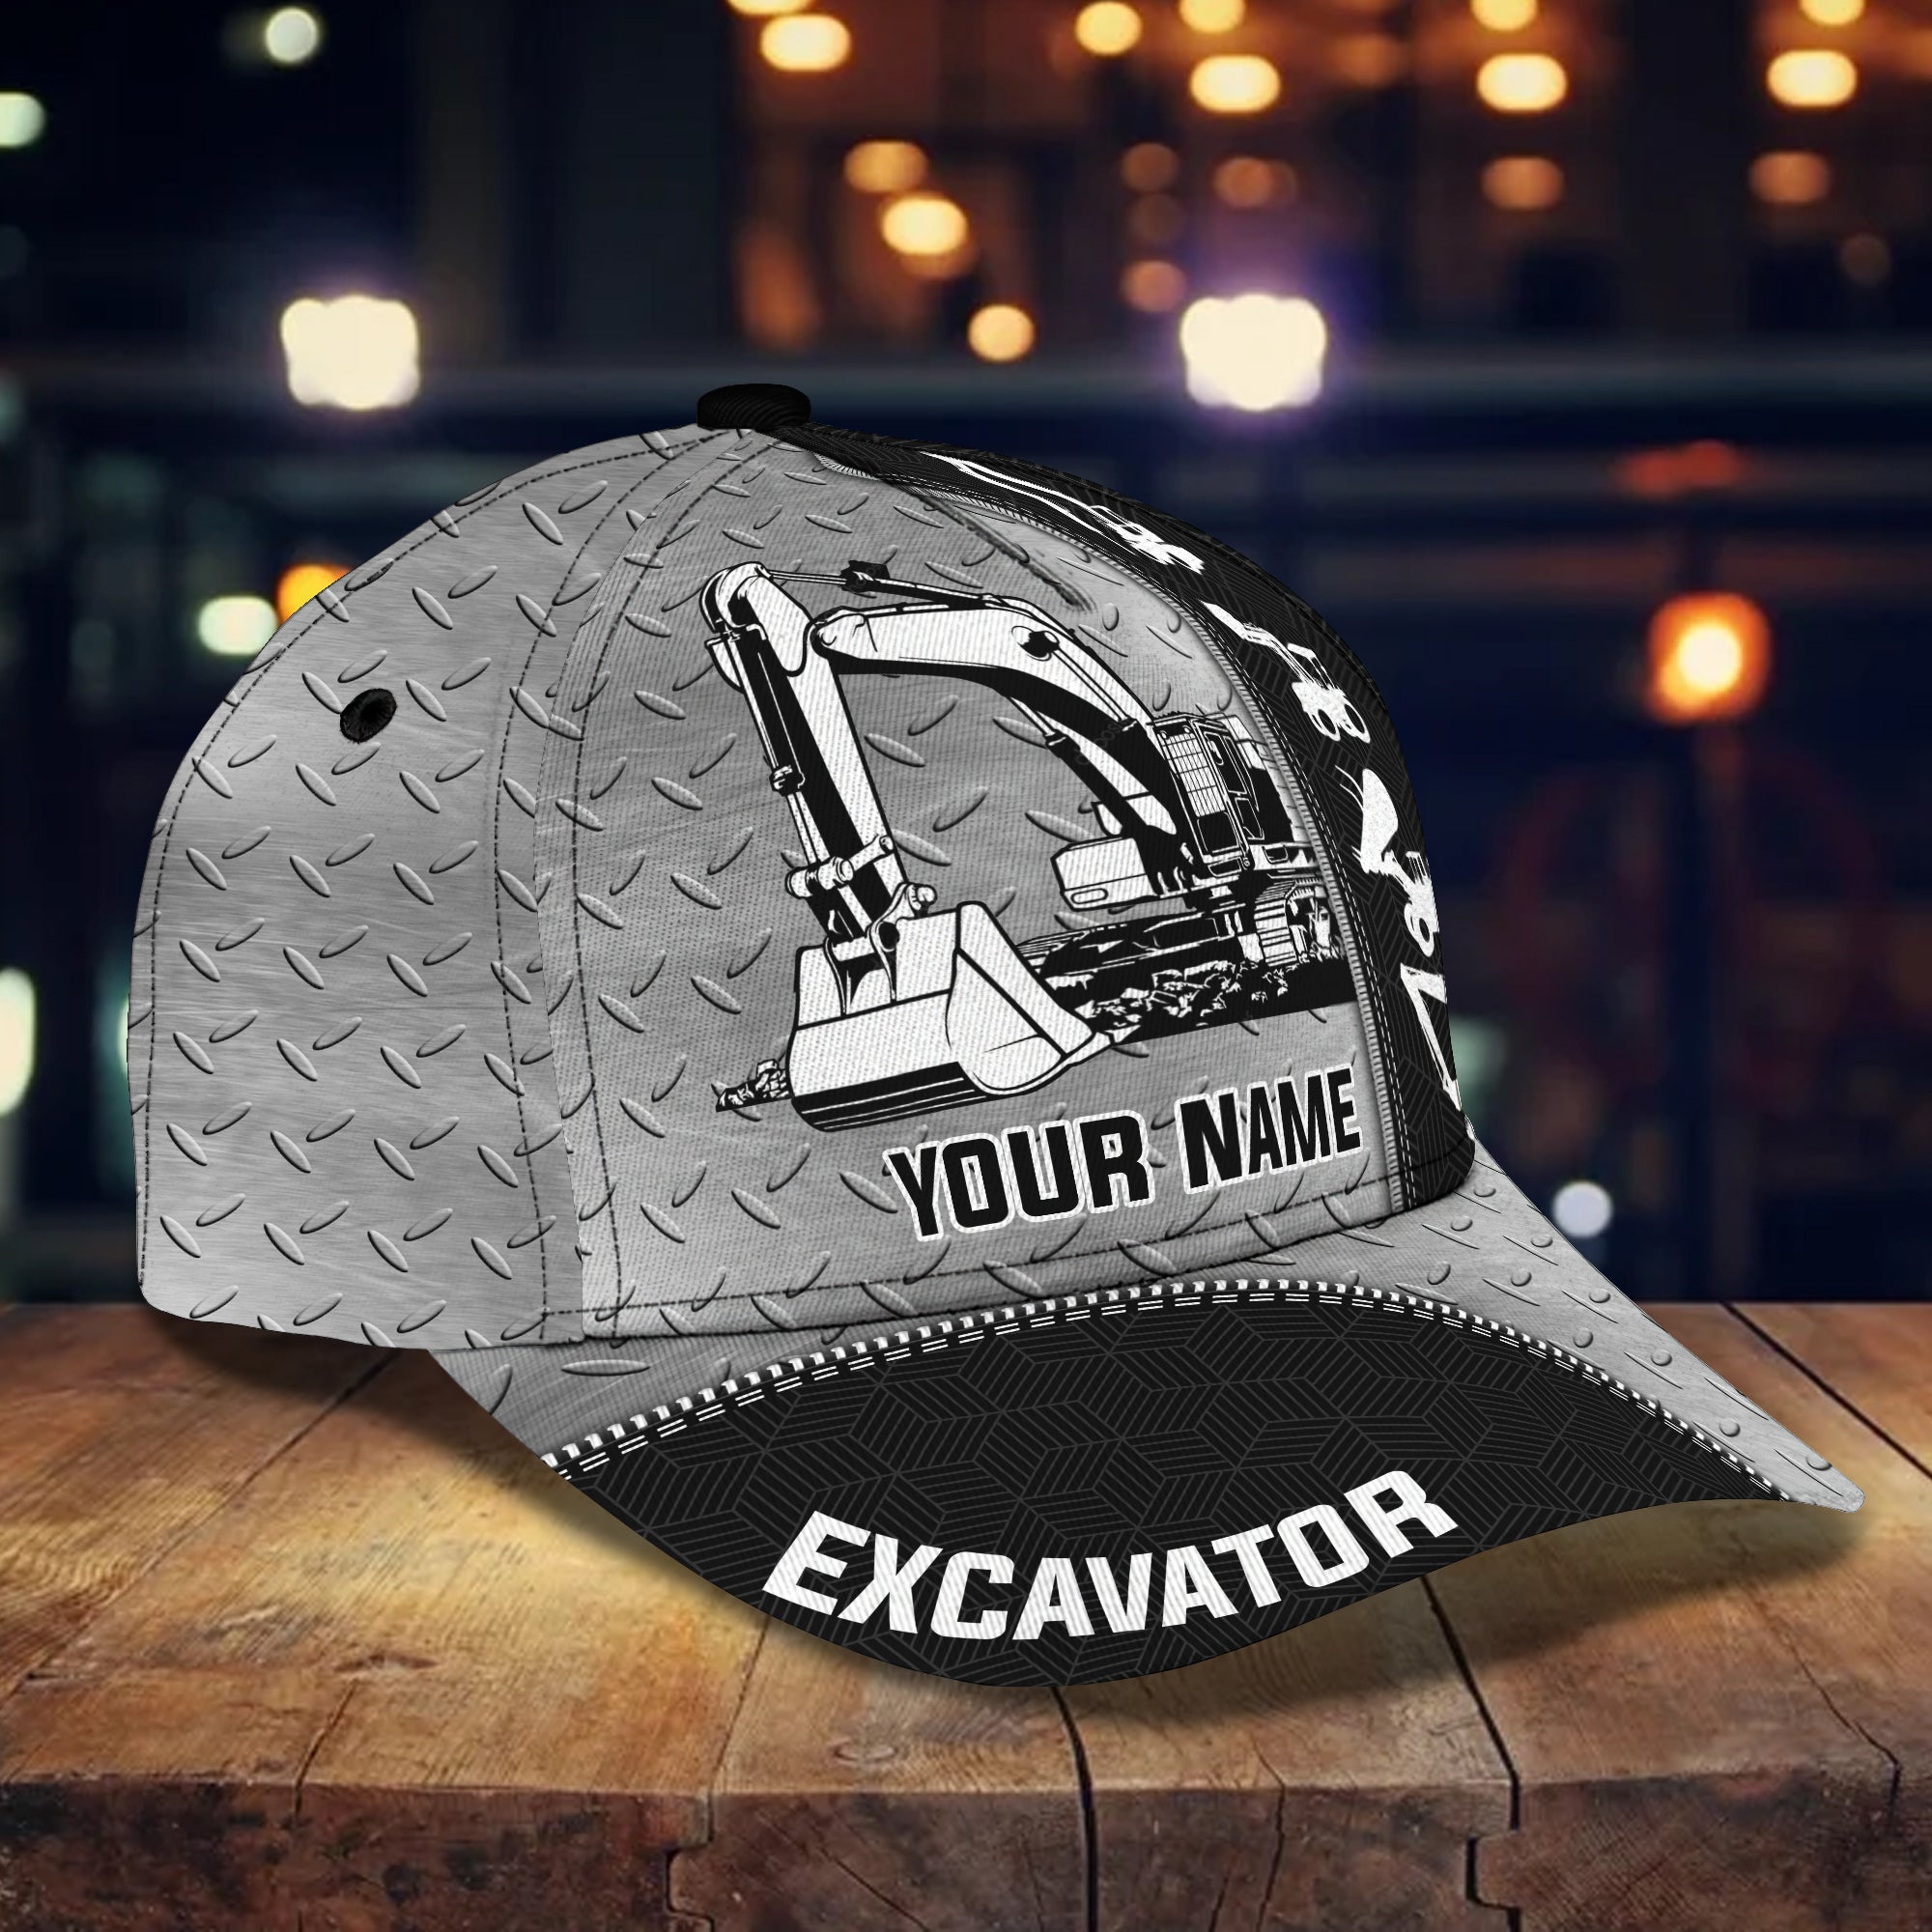 Excavator - Personalized Name Cap - Nia94